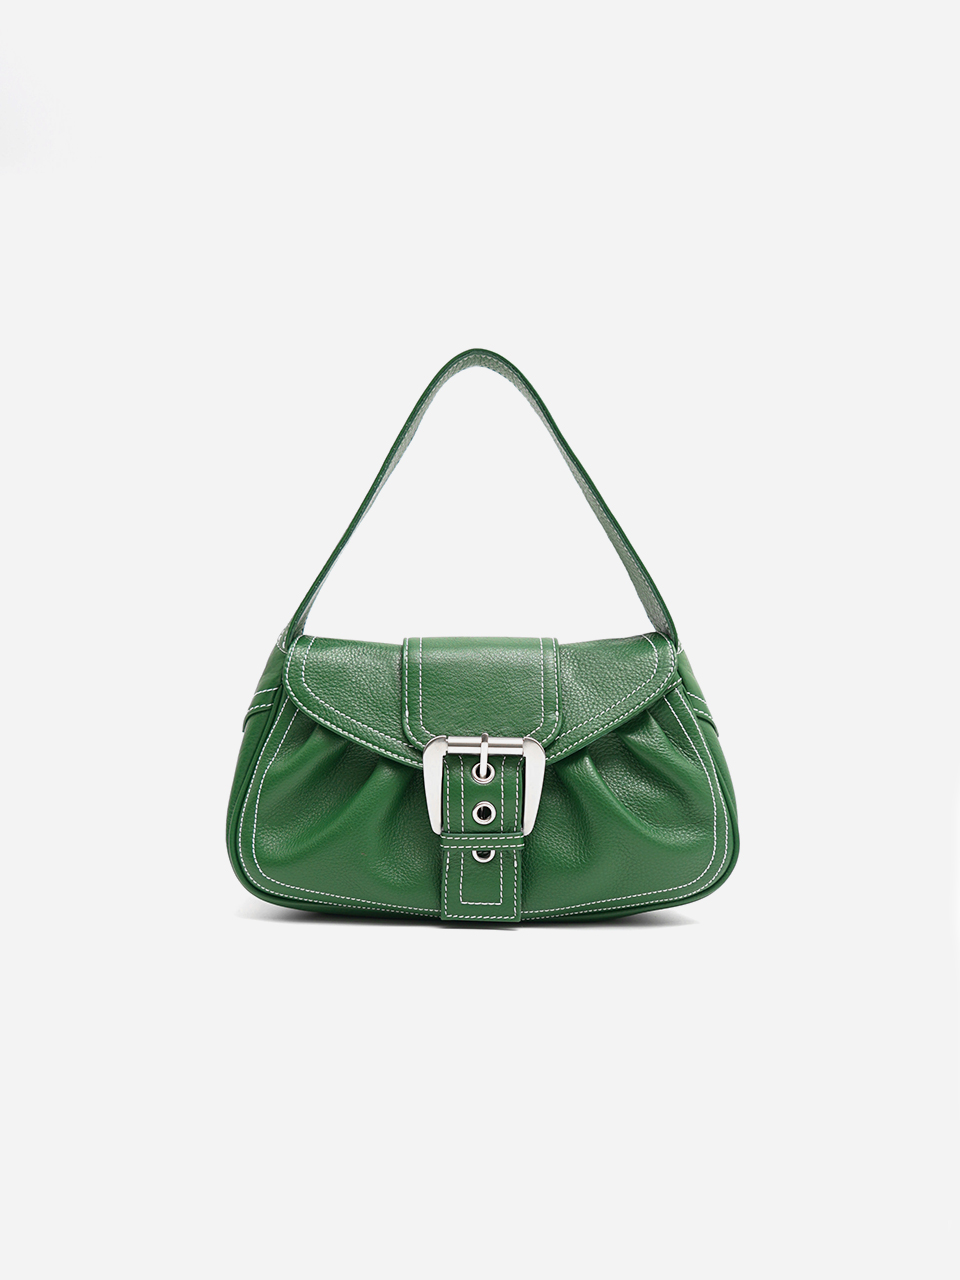 arc shoulder bag / green